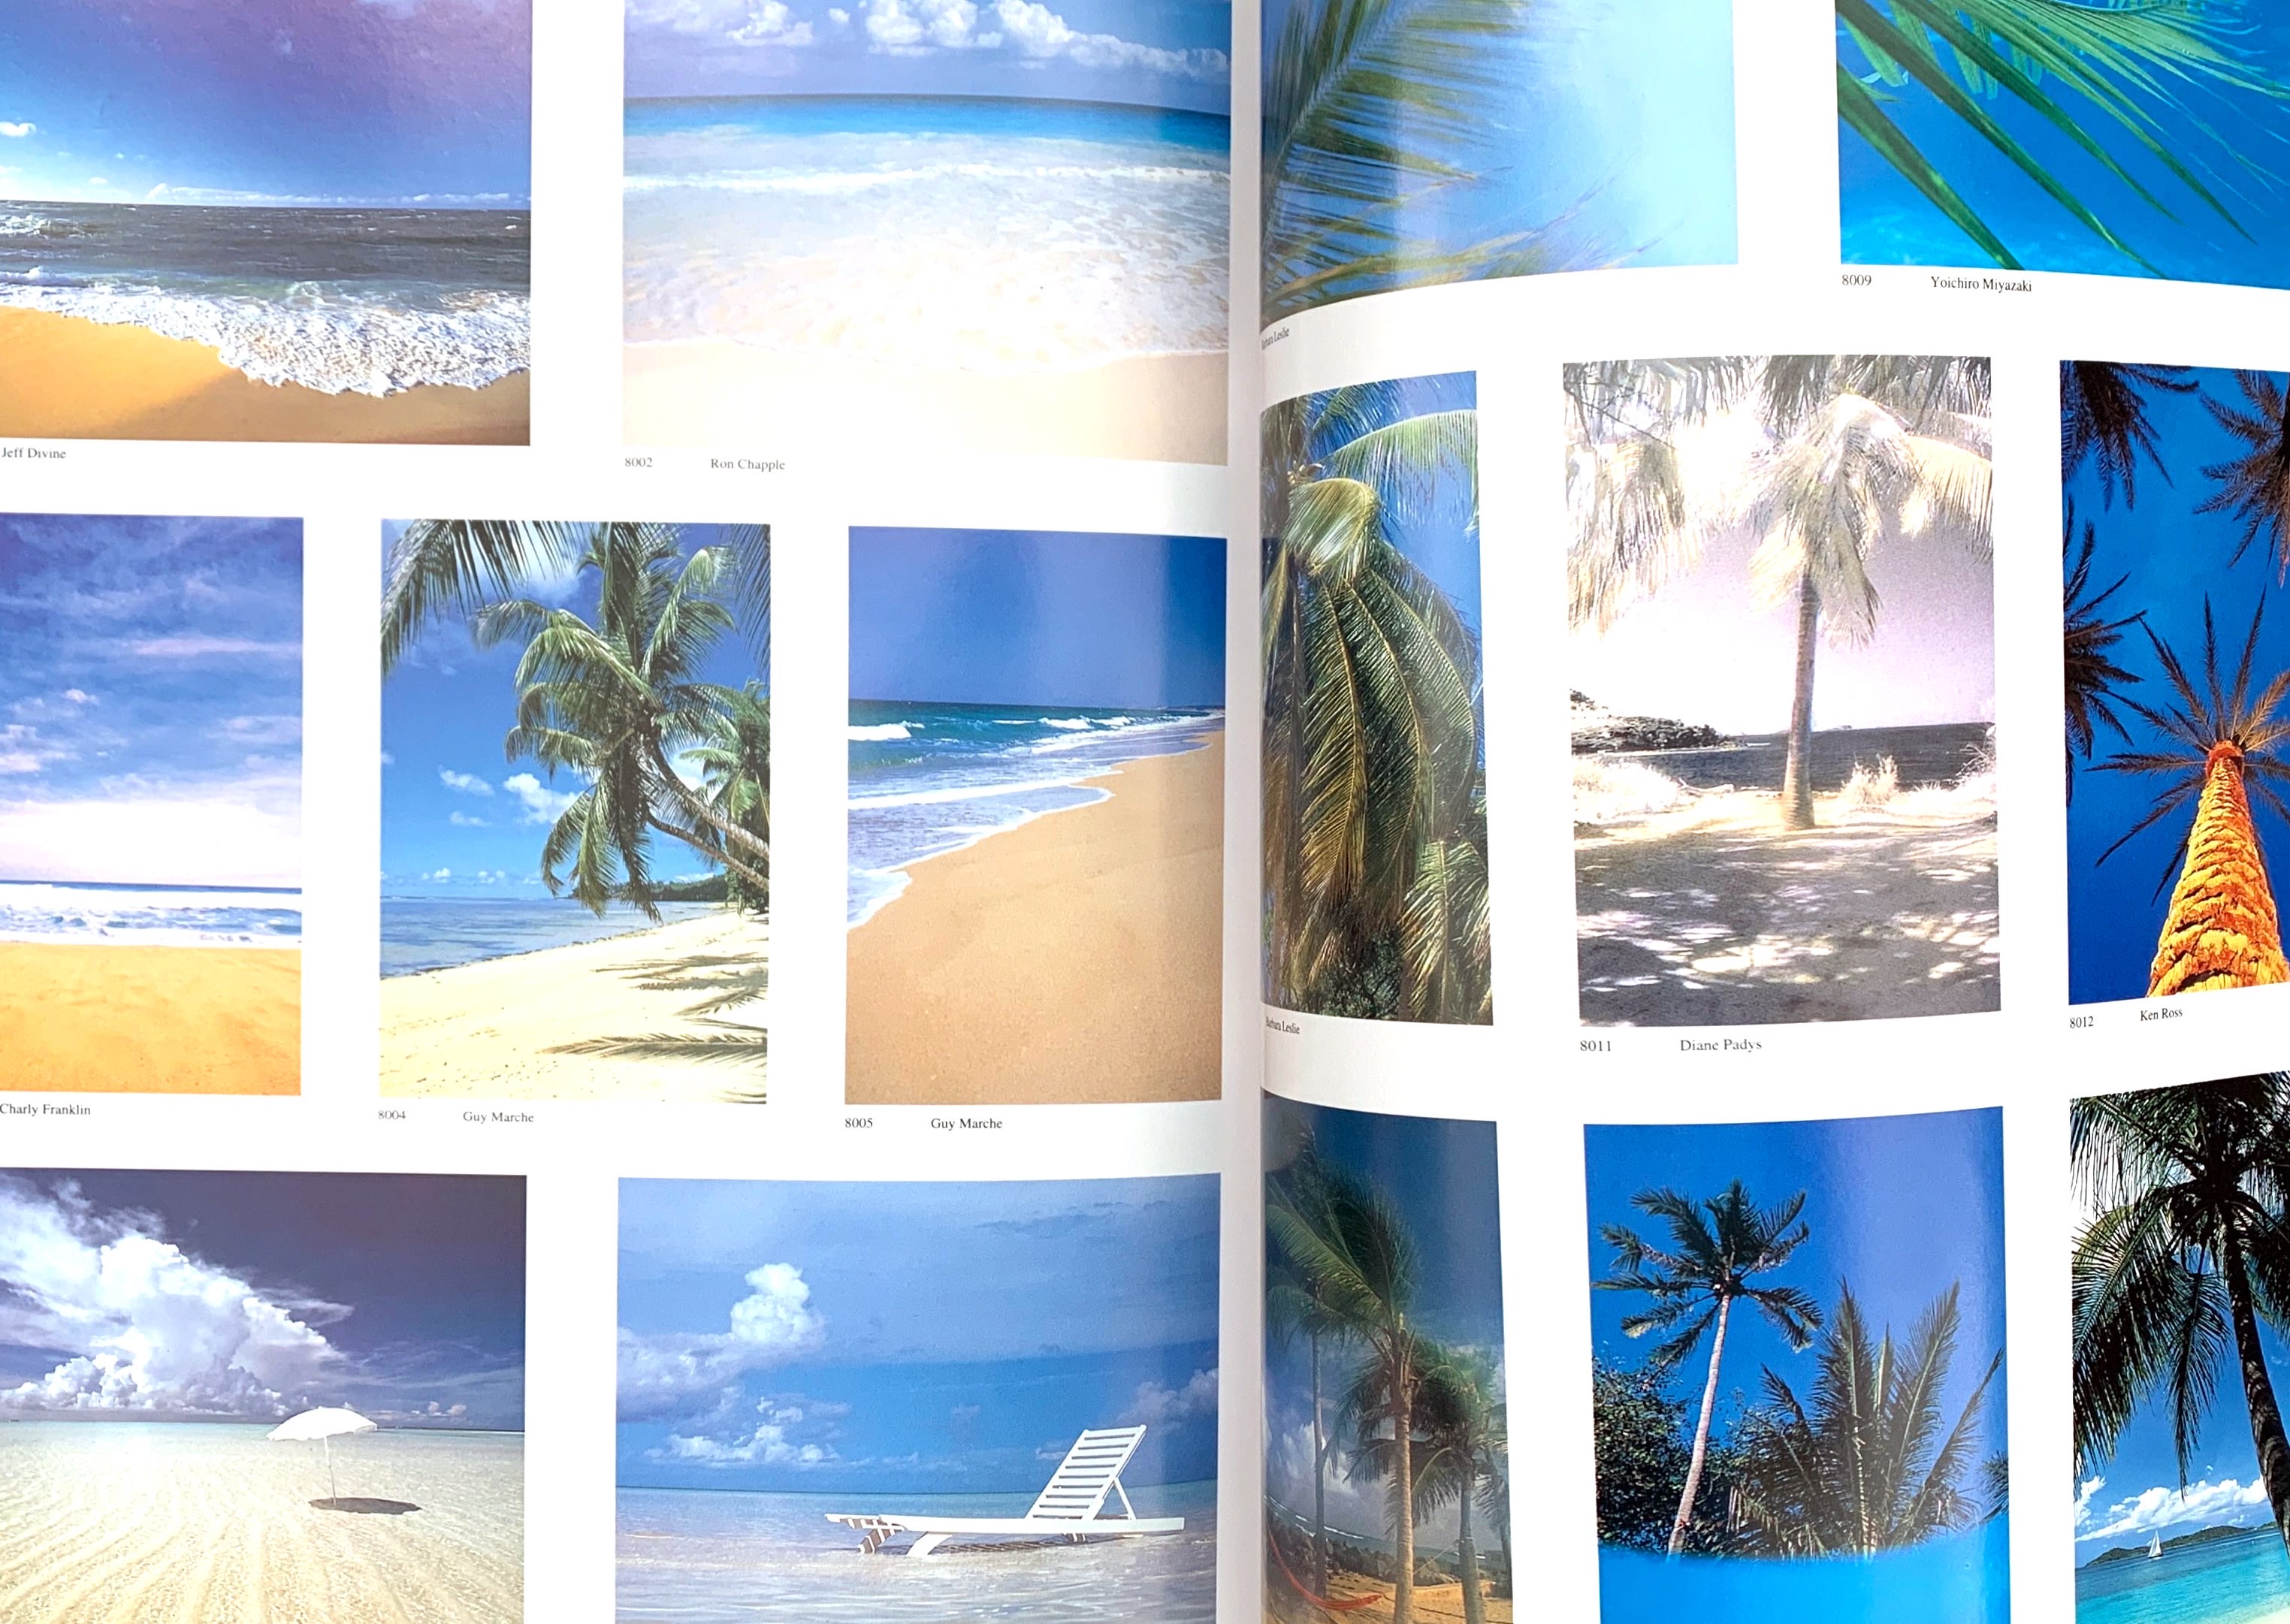 Photos of beaches in a catalog.